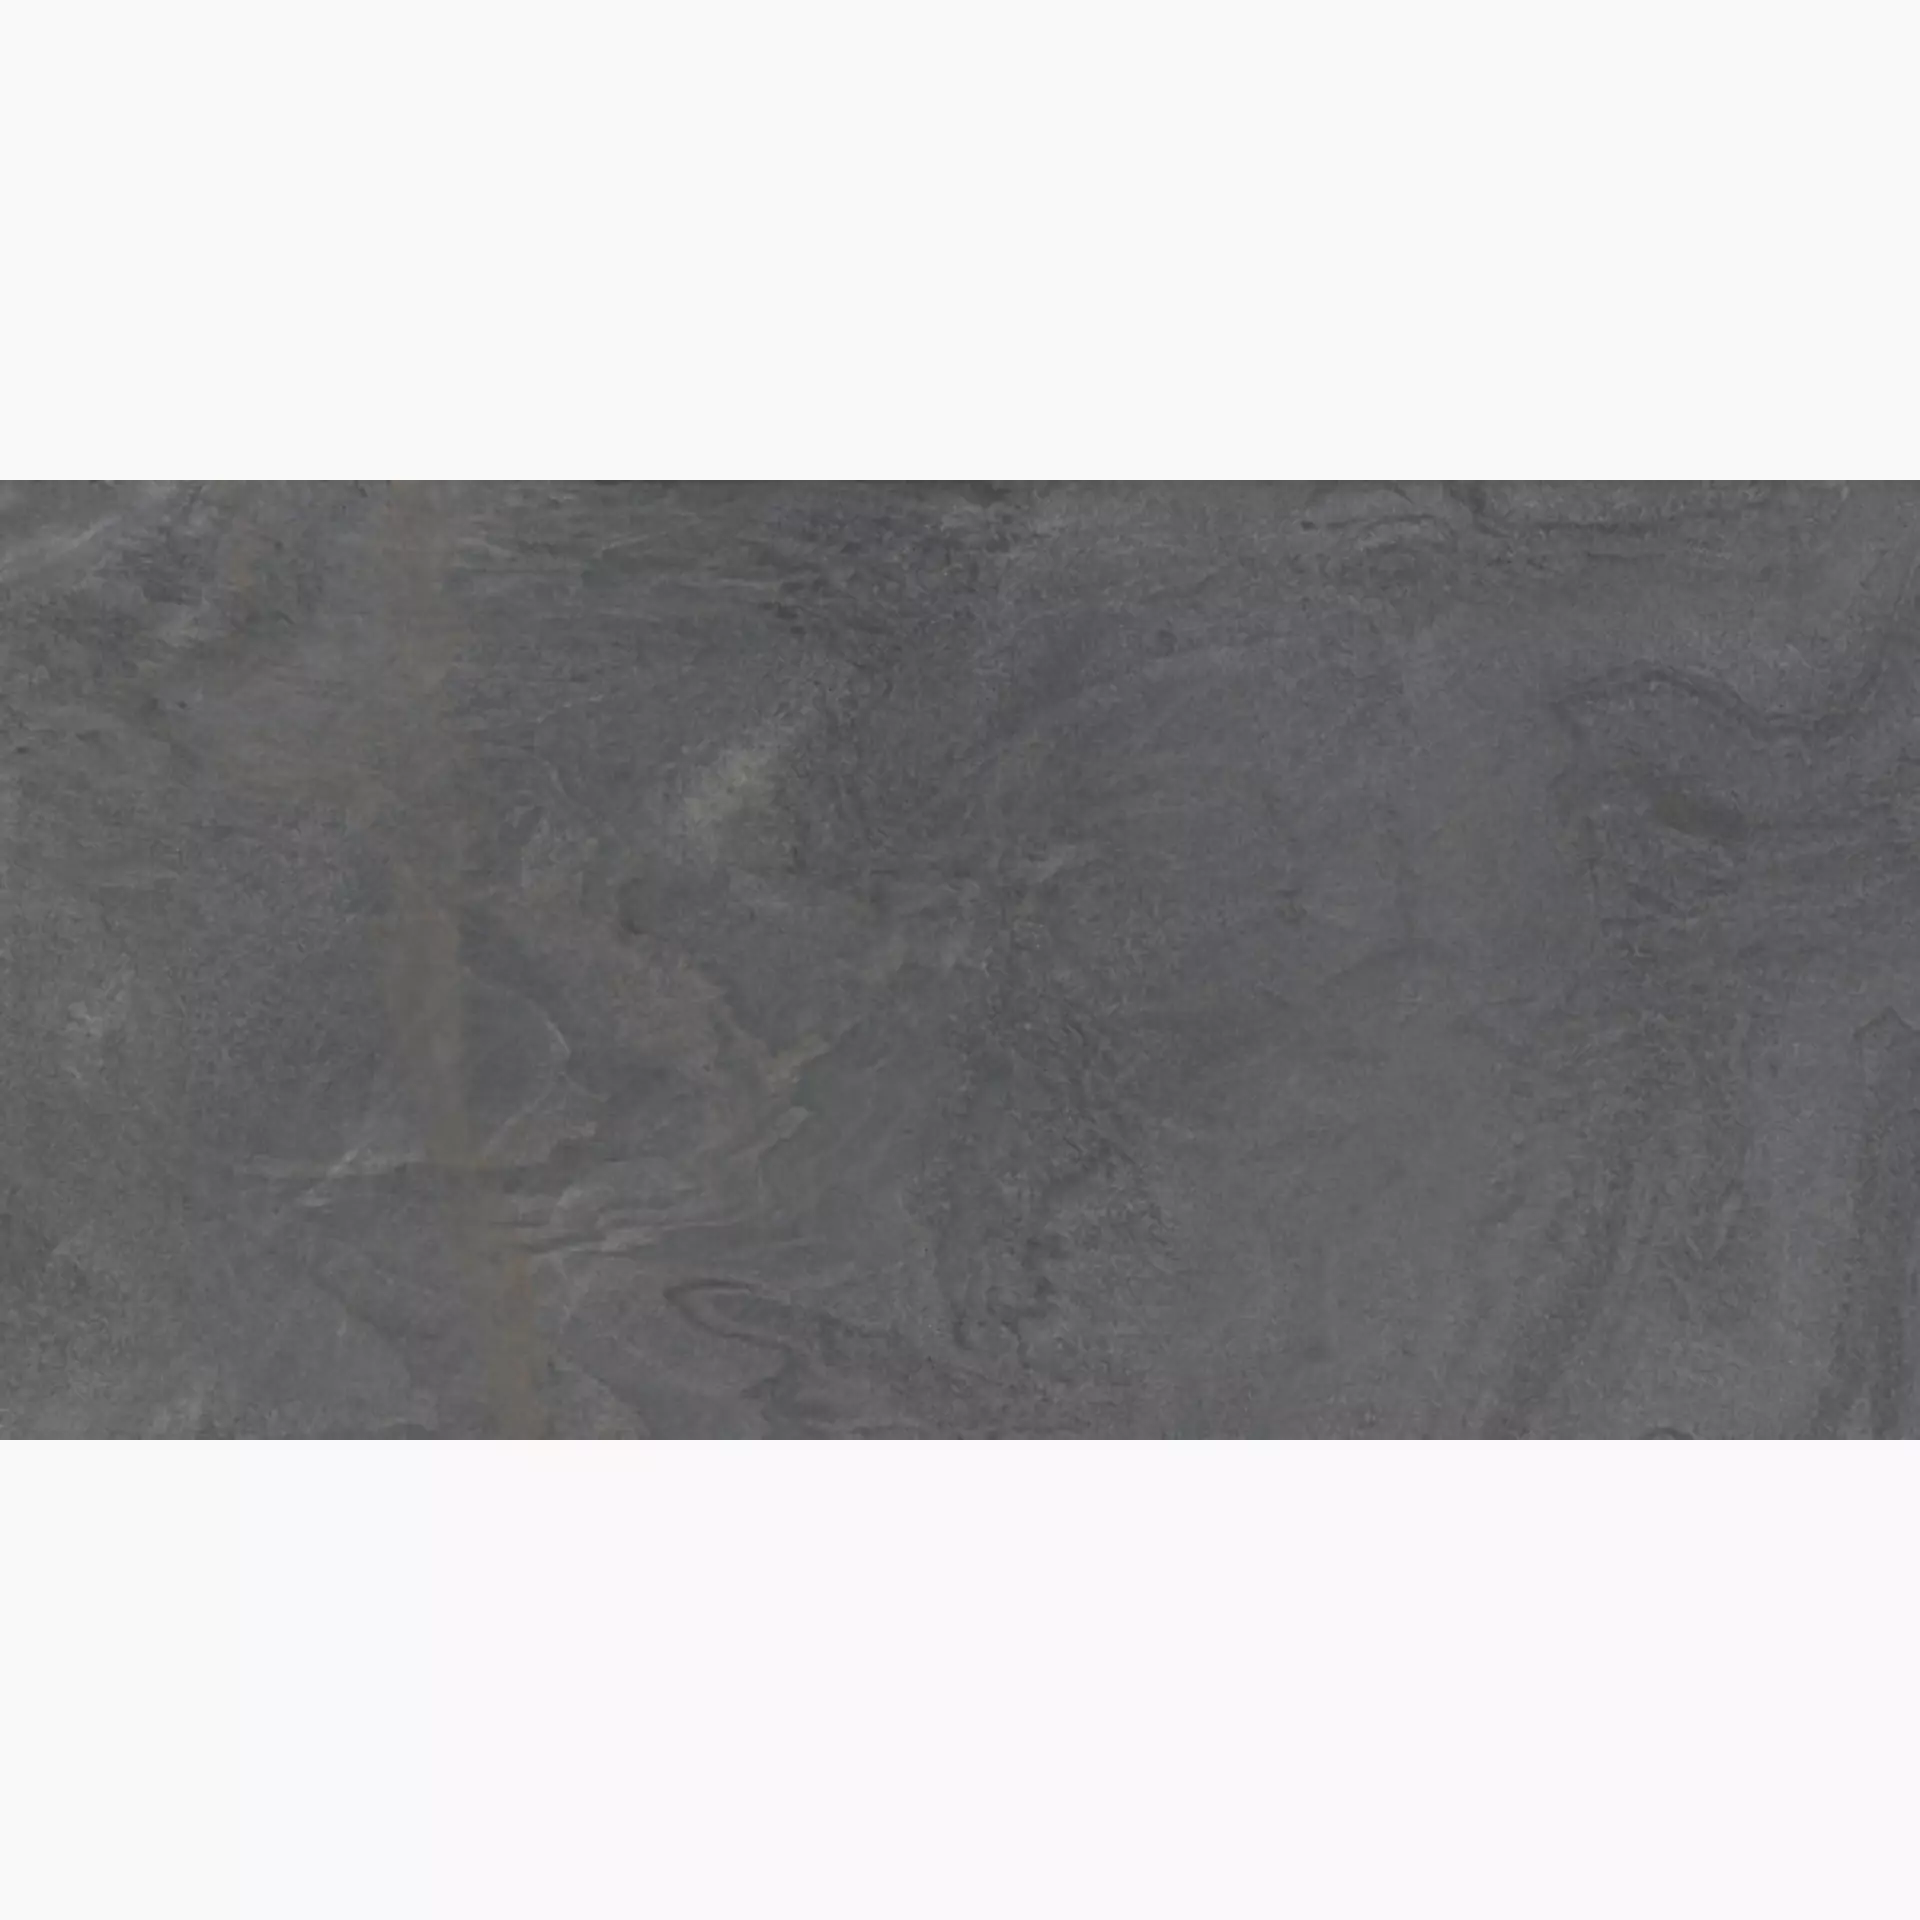 Diesel Diesel Liquid Stone Black Antislip 863740 30x60cm rektifiziert 9mm